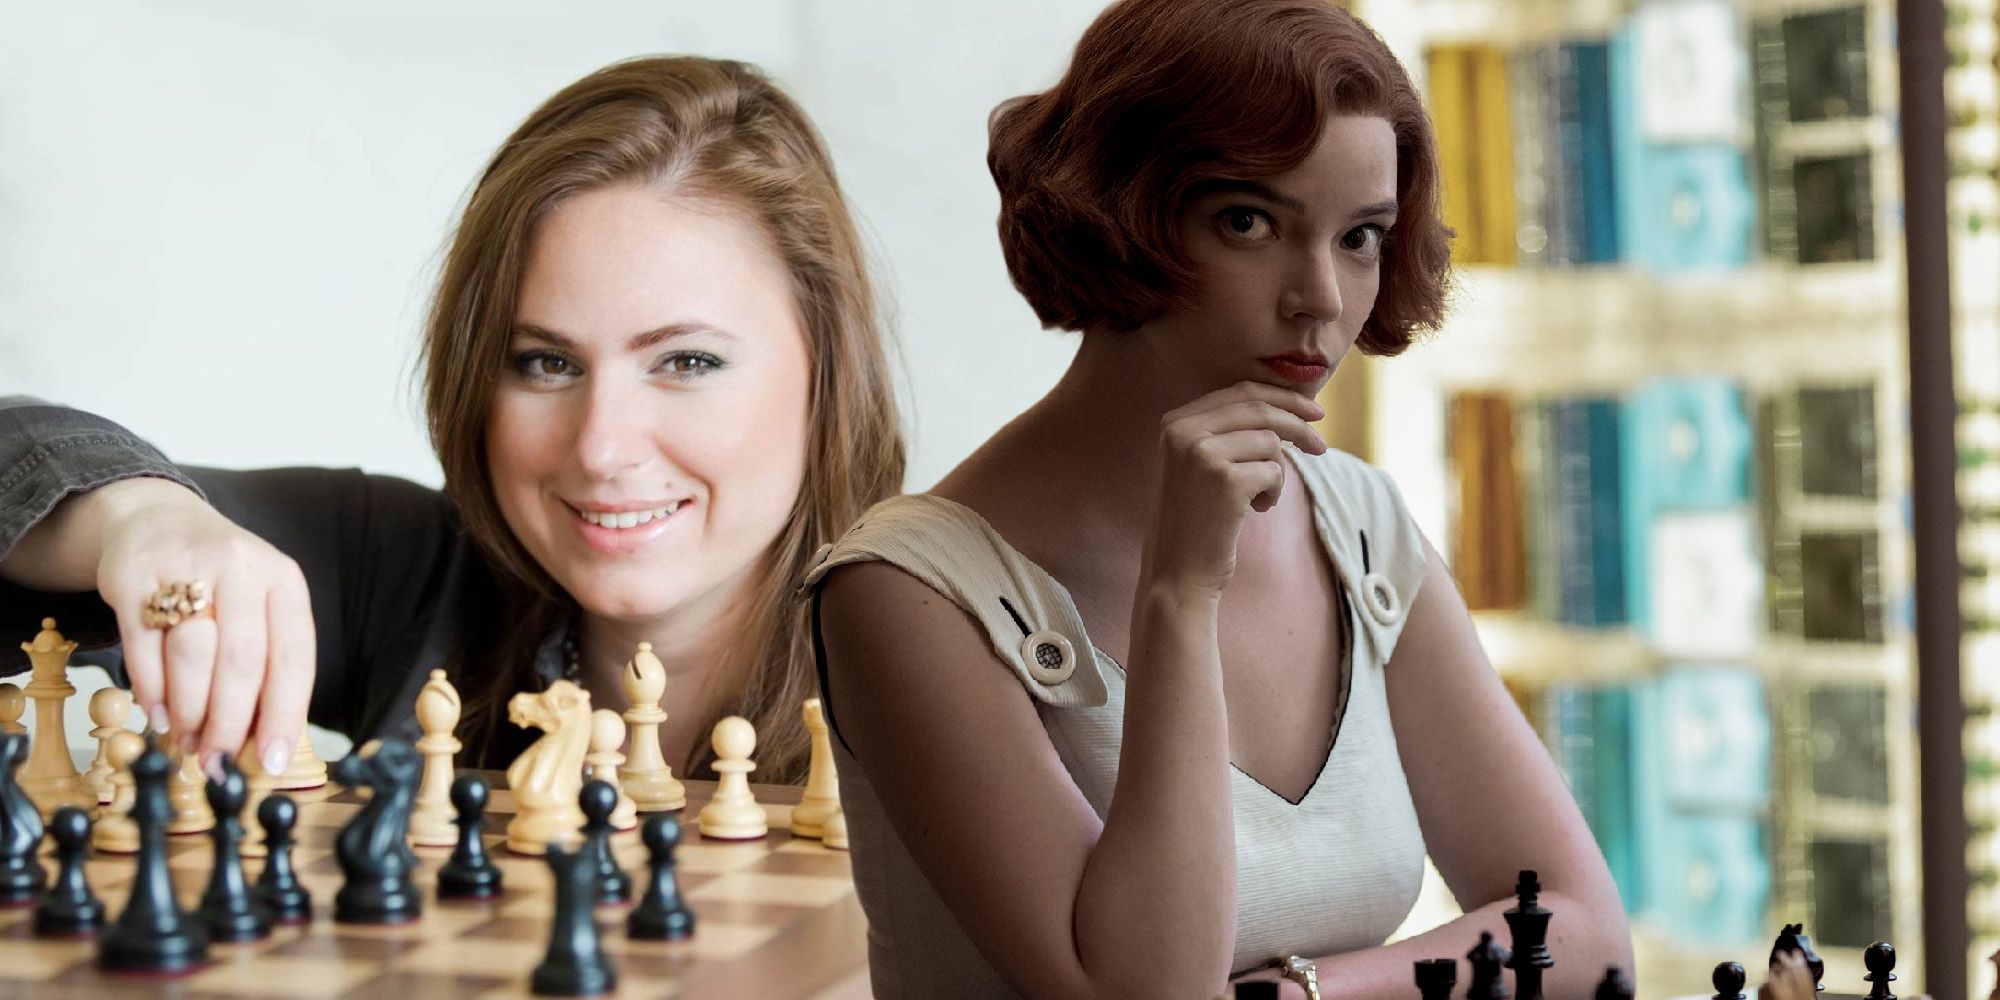 women and chess